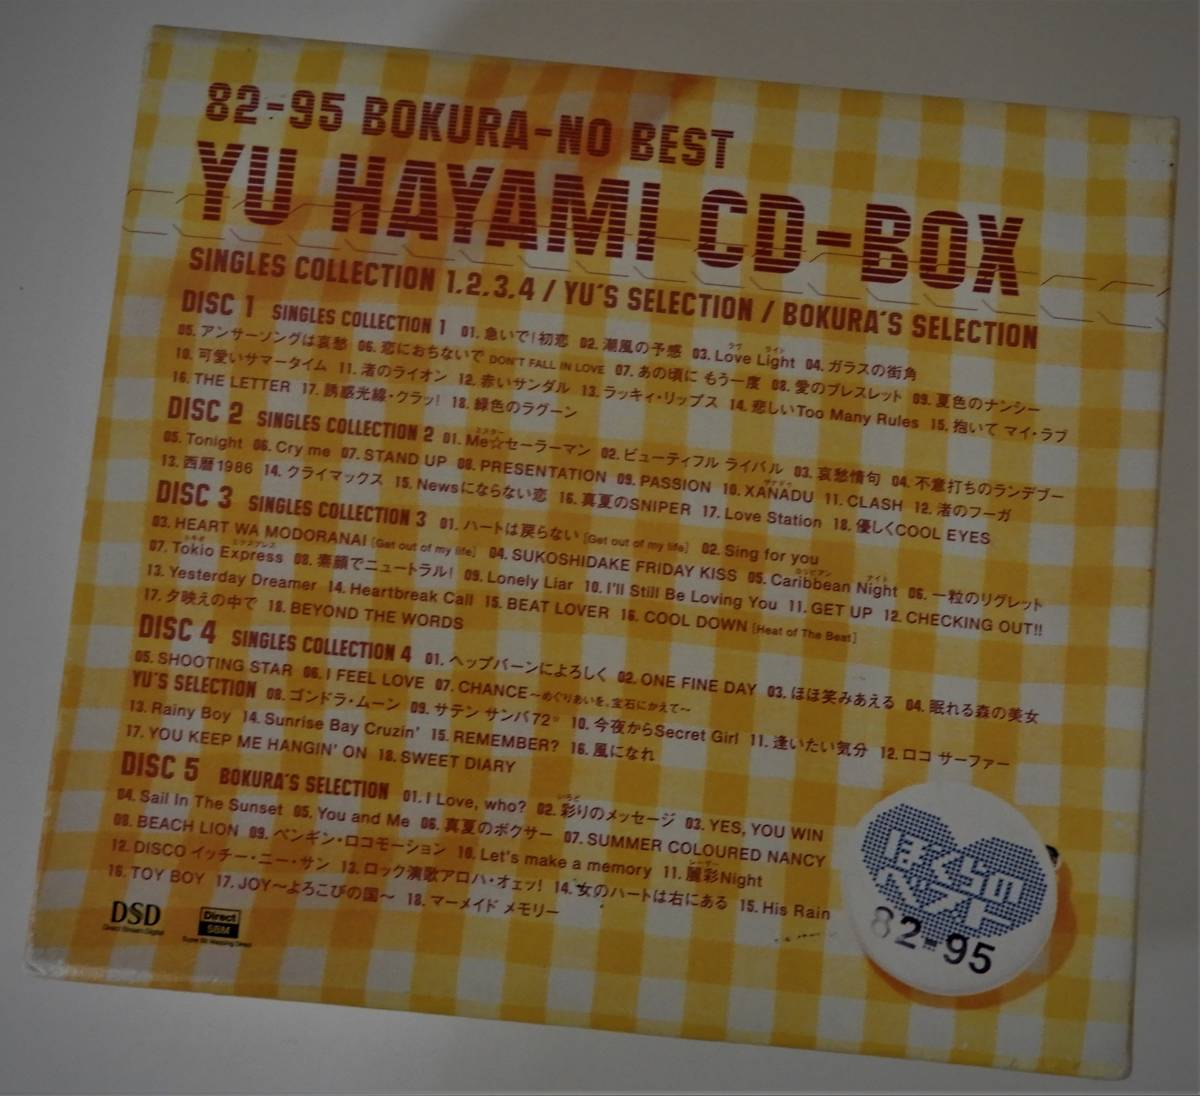 ( бесплатная доставка б/у CD-BOX).... лучший Hayami Yu CD-BOX ( все 5 листов комплект )82-95 BOKURA-NO BEST